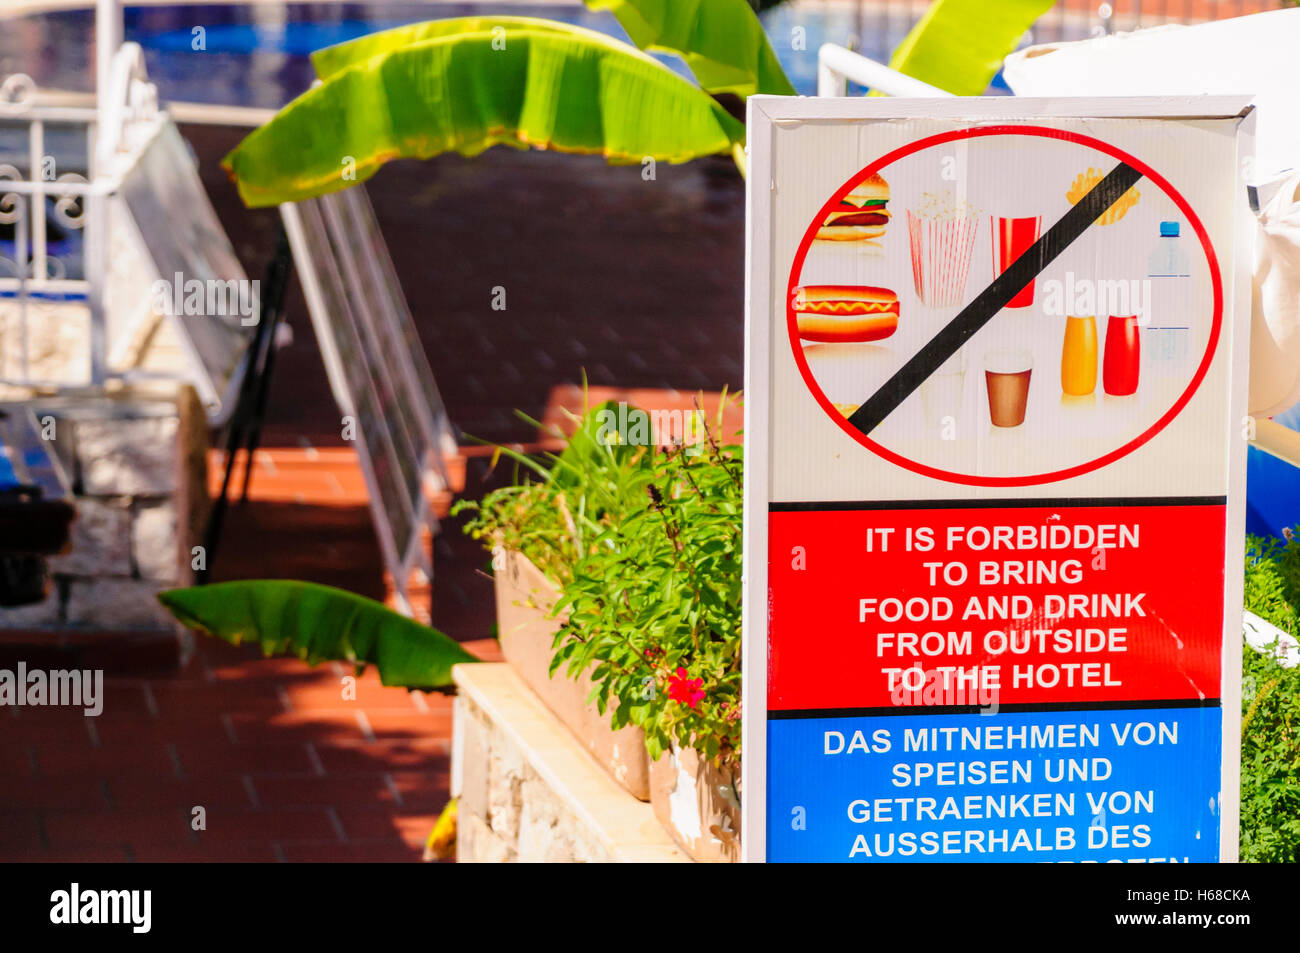 Schild am Eingang eine Warnung Hotelgäste nicht zu bringen in Essen und Trinken von außerhalb. Stockfoto